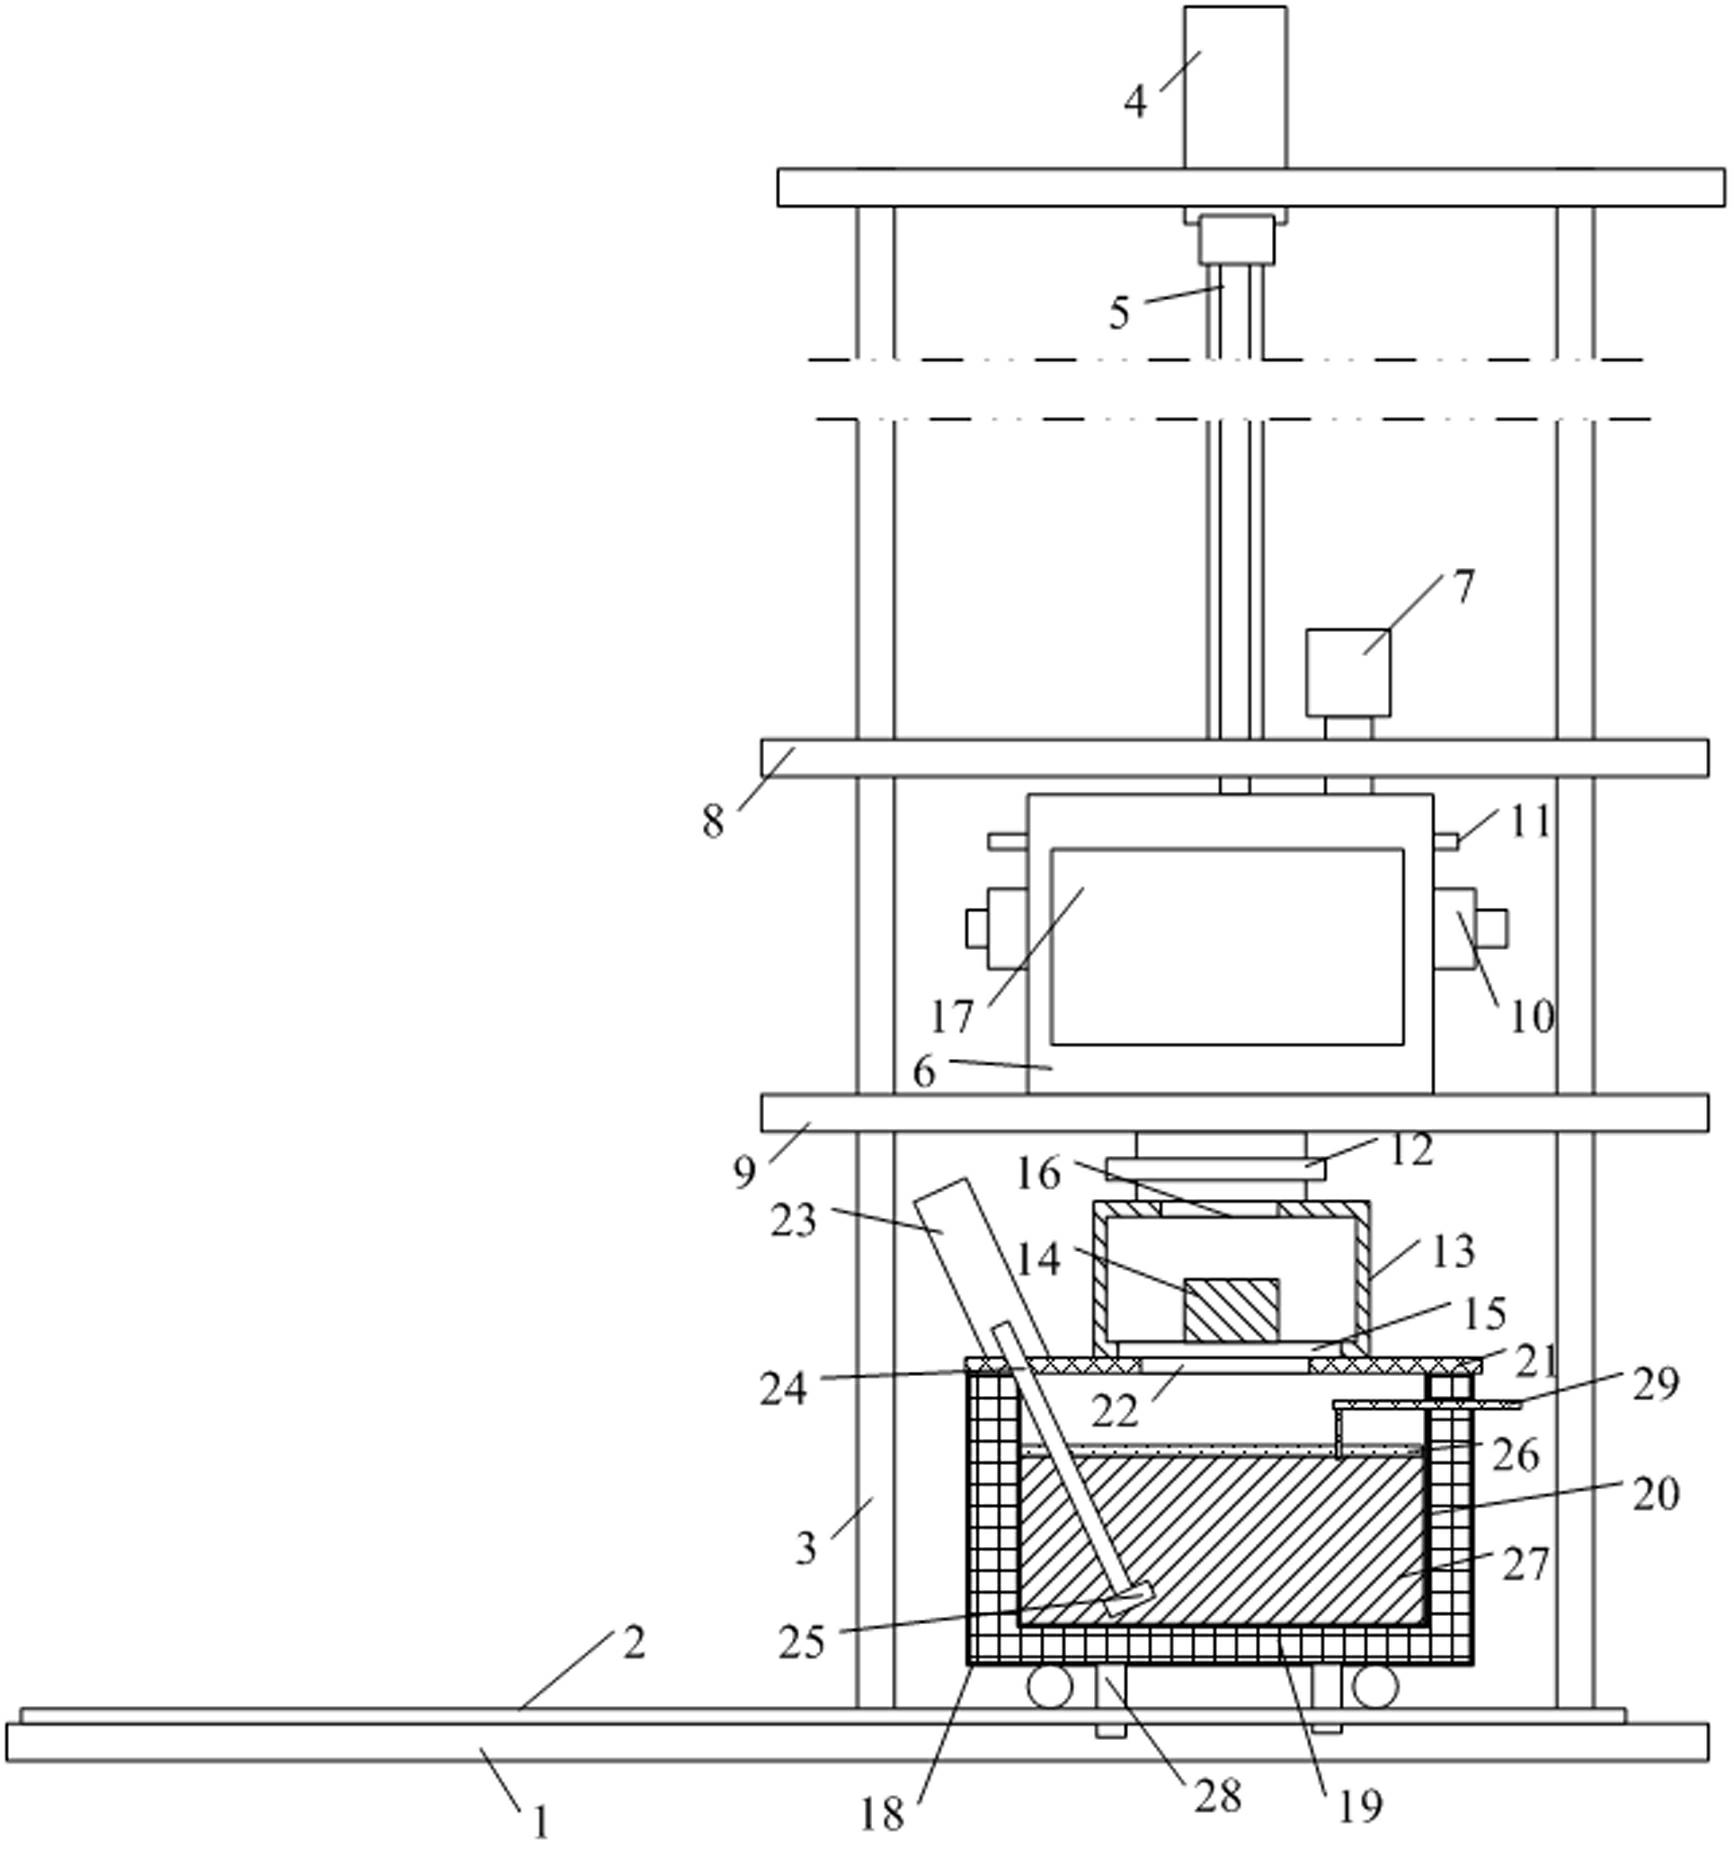 Test machine for simulating hot galvanizing of slat